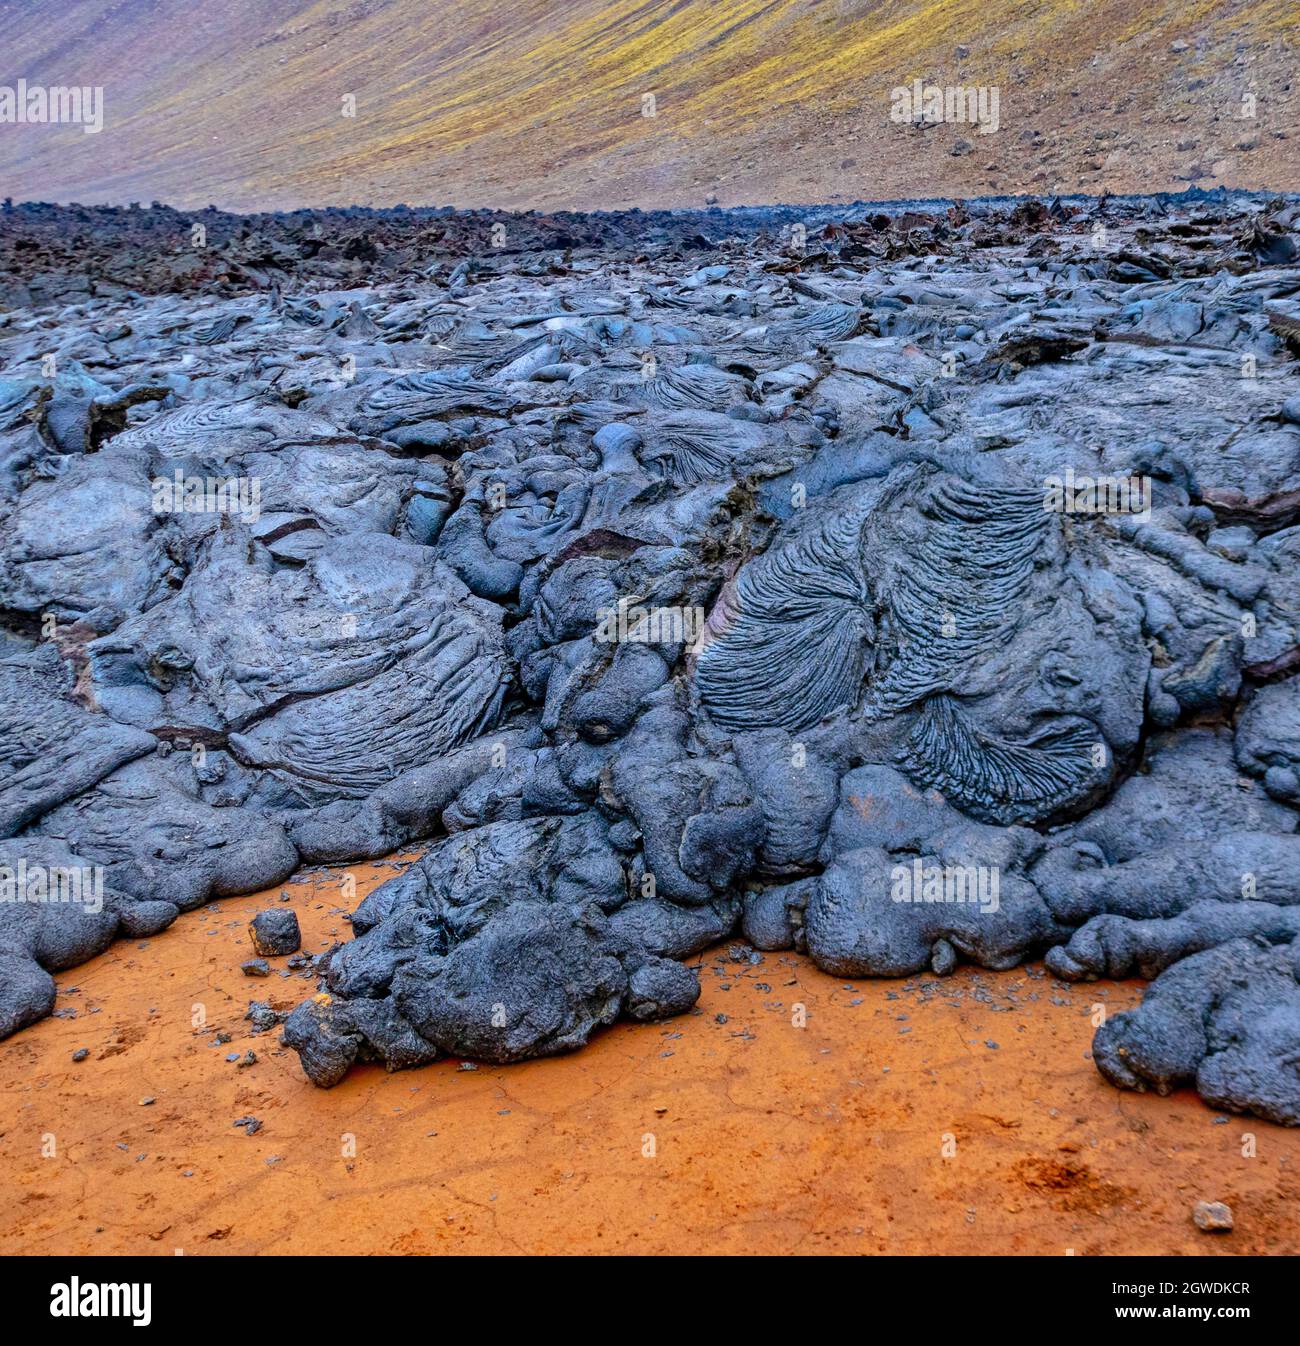 Fagradalsfjall, Islande - 11 juin 2021 : lave de refroidissement, éruption volcanique près de Reykjavik, Islande Banque D'Images